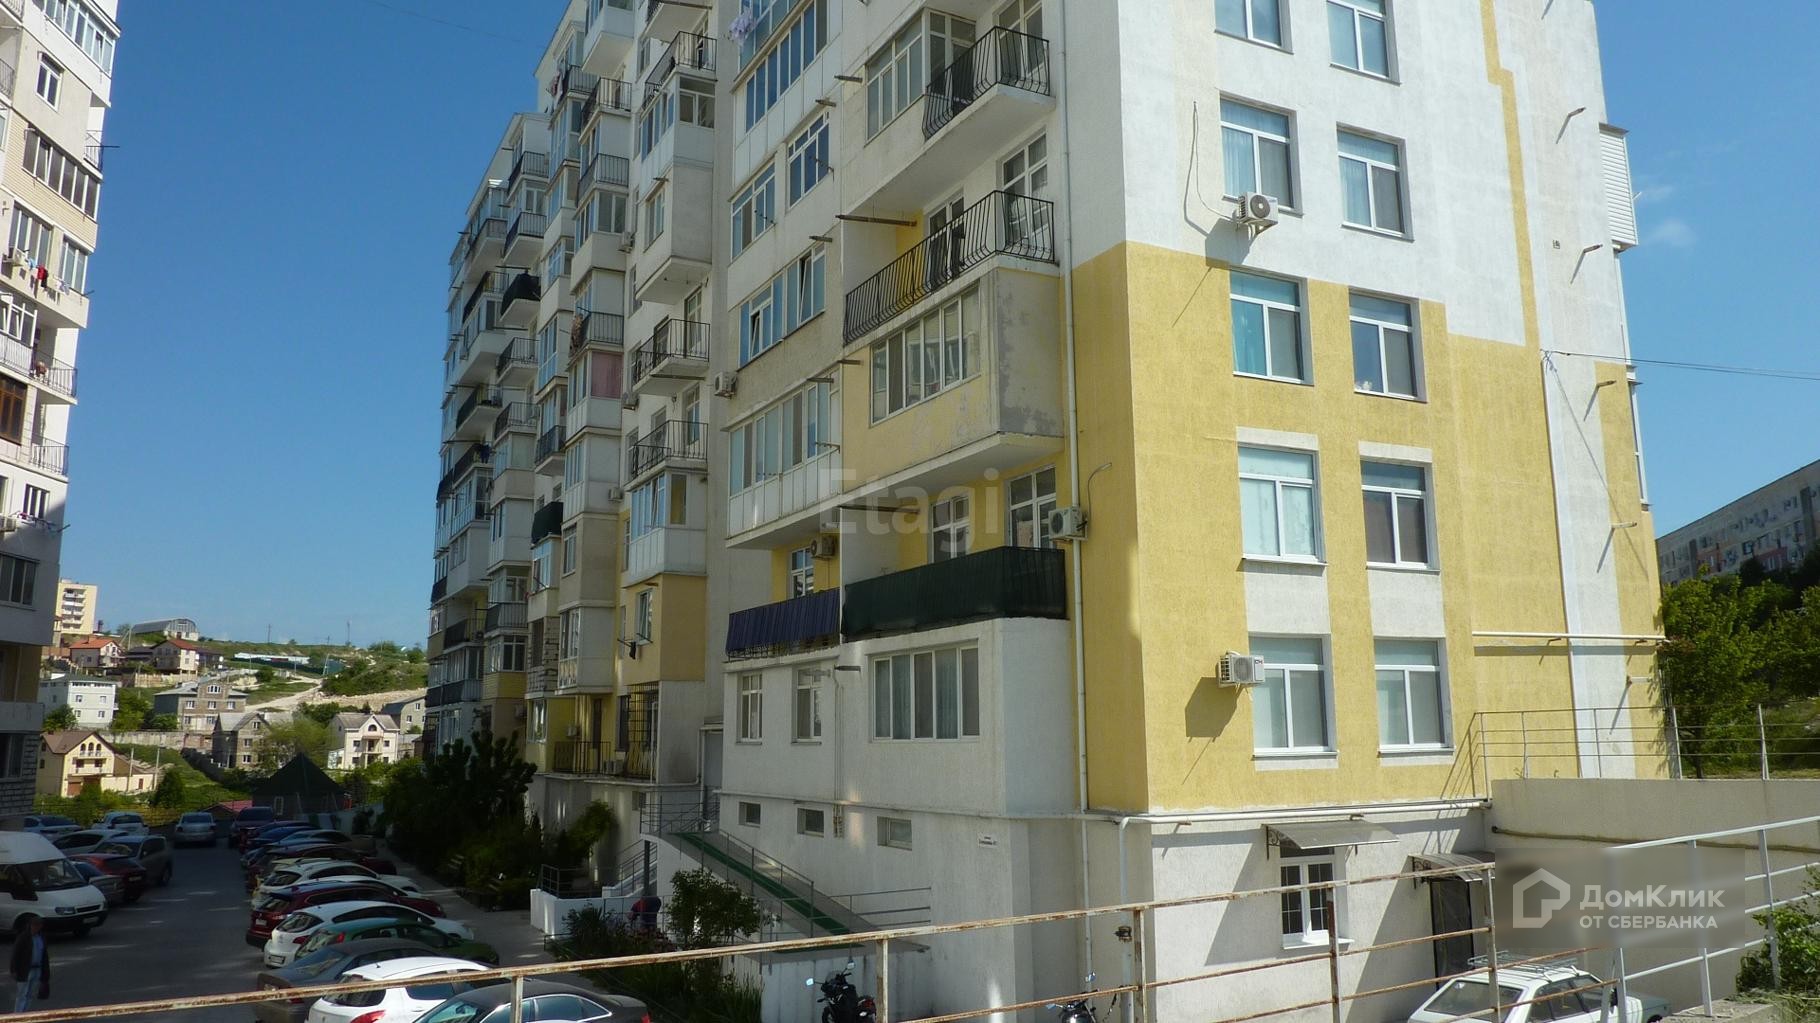 г. Севастополь, ул. Степаняна, д. 4, к. 1 - фасад здания